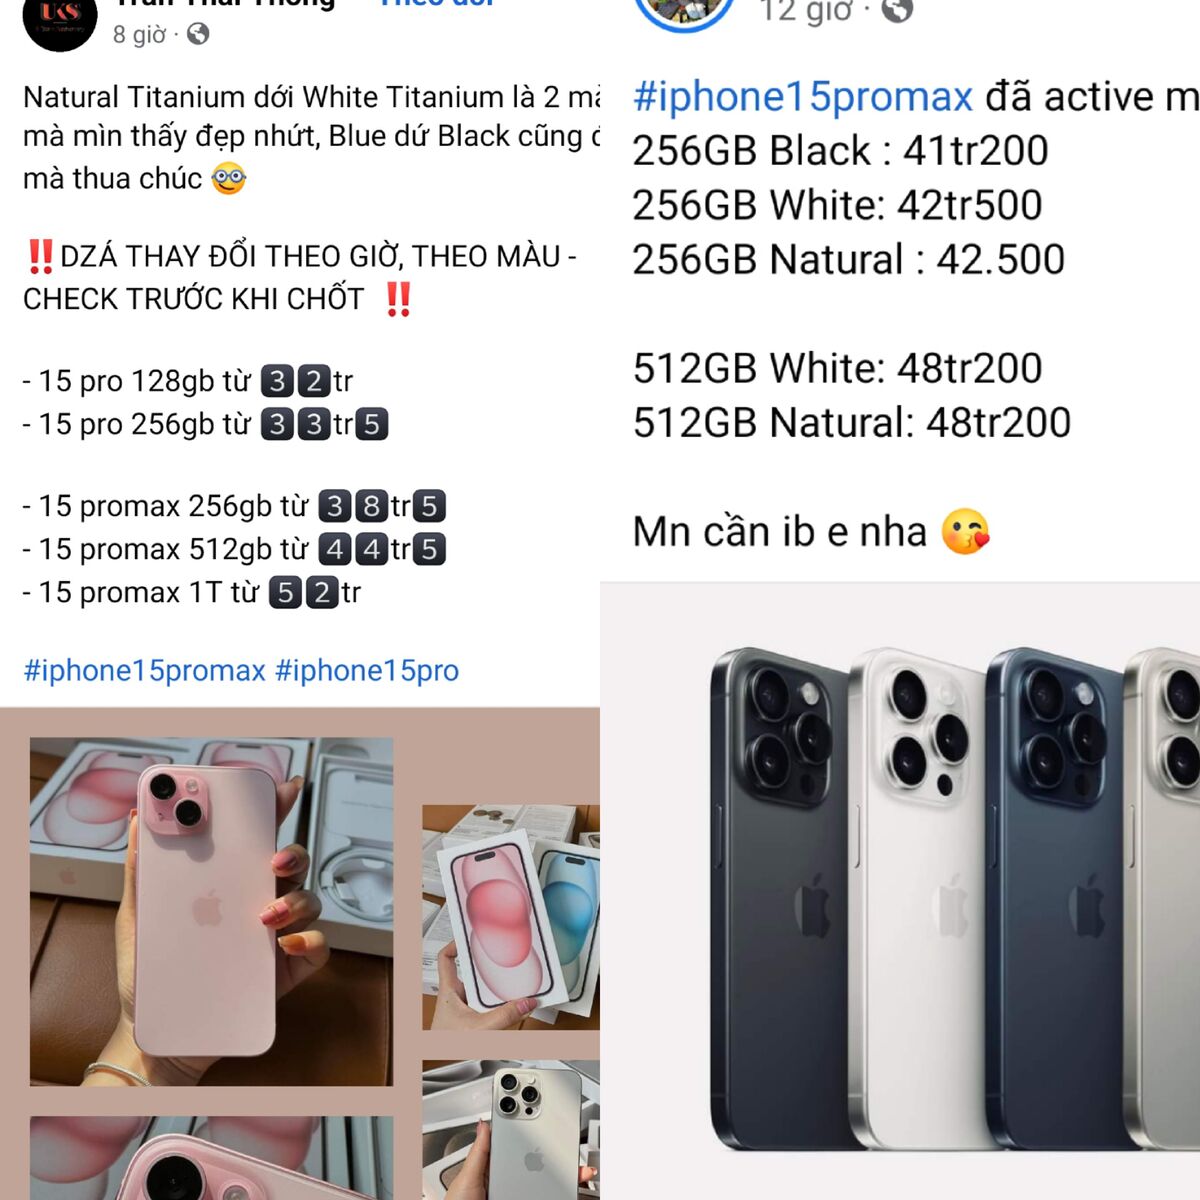 Mức giá một chiếc điện thoại iPhone 15 các phiên bản được bán chênh lệch từ 10-15 triệu đồng/chiếc so với giá bán dự kiến tại Việt Nam. Ảnh chụp màn hình - Trịnh Anh